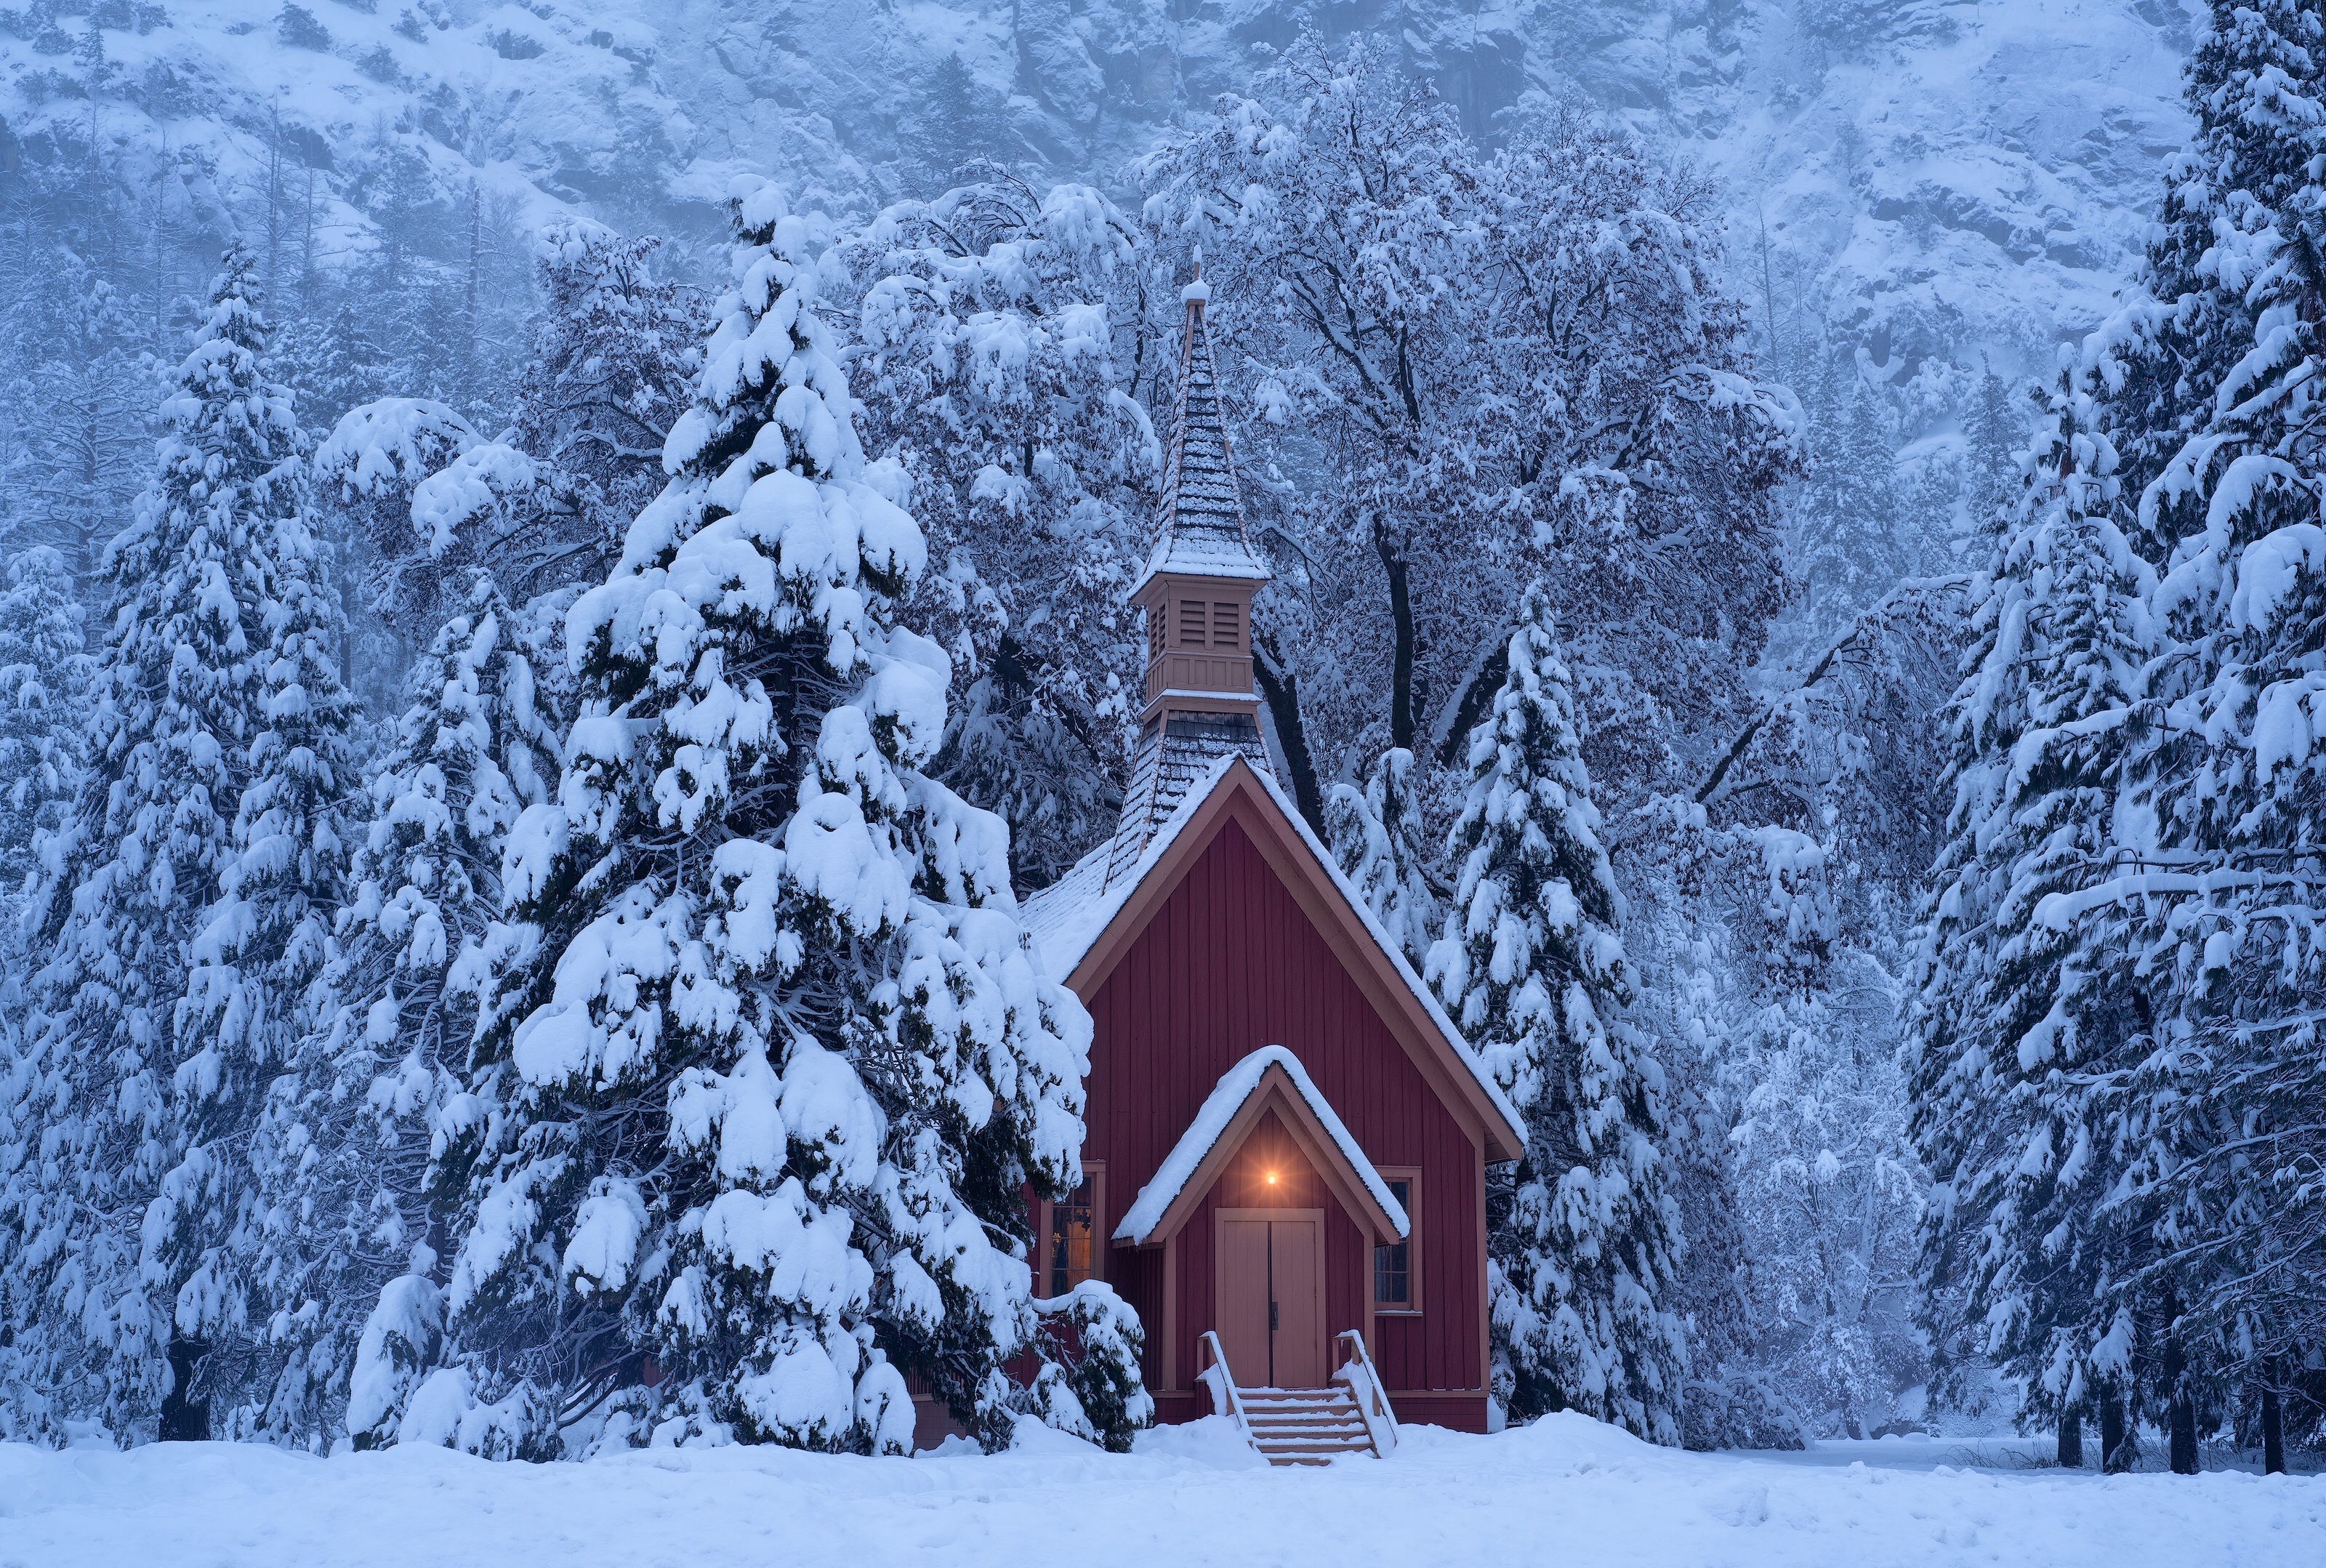 Скачать обои бесплатно Зима, Снег, Часовня, Религиозные картинка на рабочий стол ПК